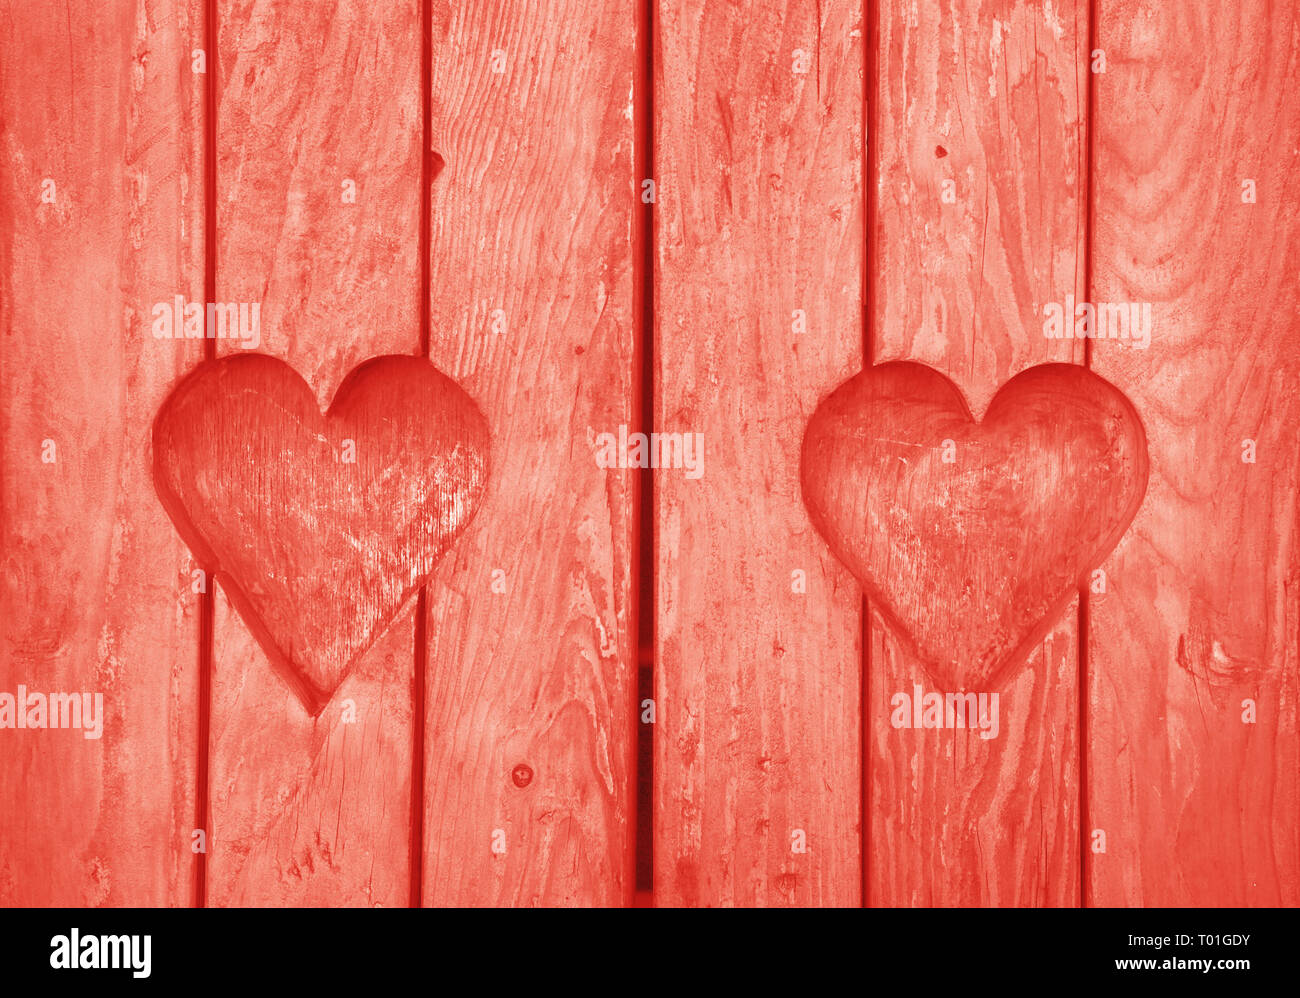 Près de deux éléments en forme de coeur, symbole de l'amour, de romance et de convivialité, le bois coupé en planches en bois sculpté texture background, peint rose corail Banque D'Images